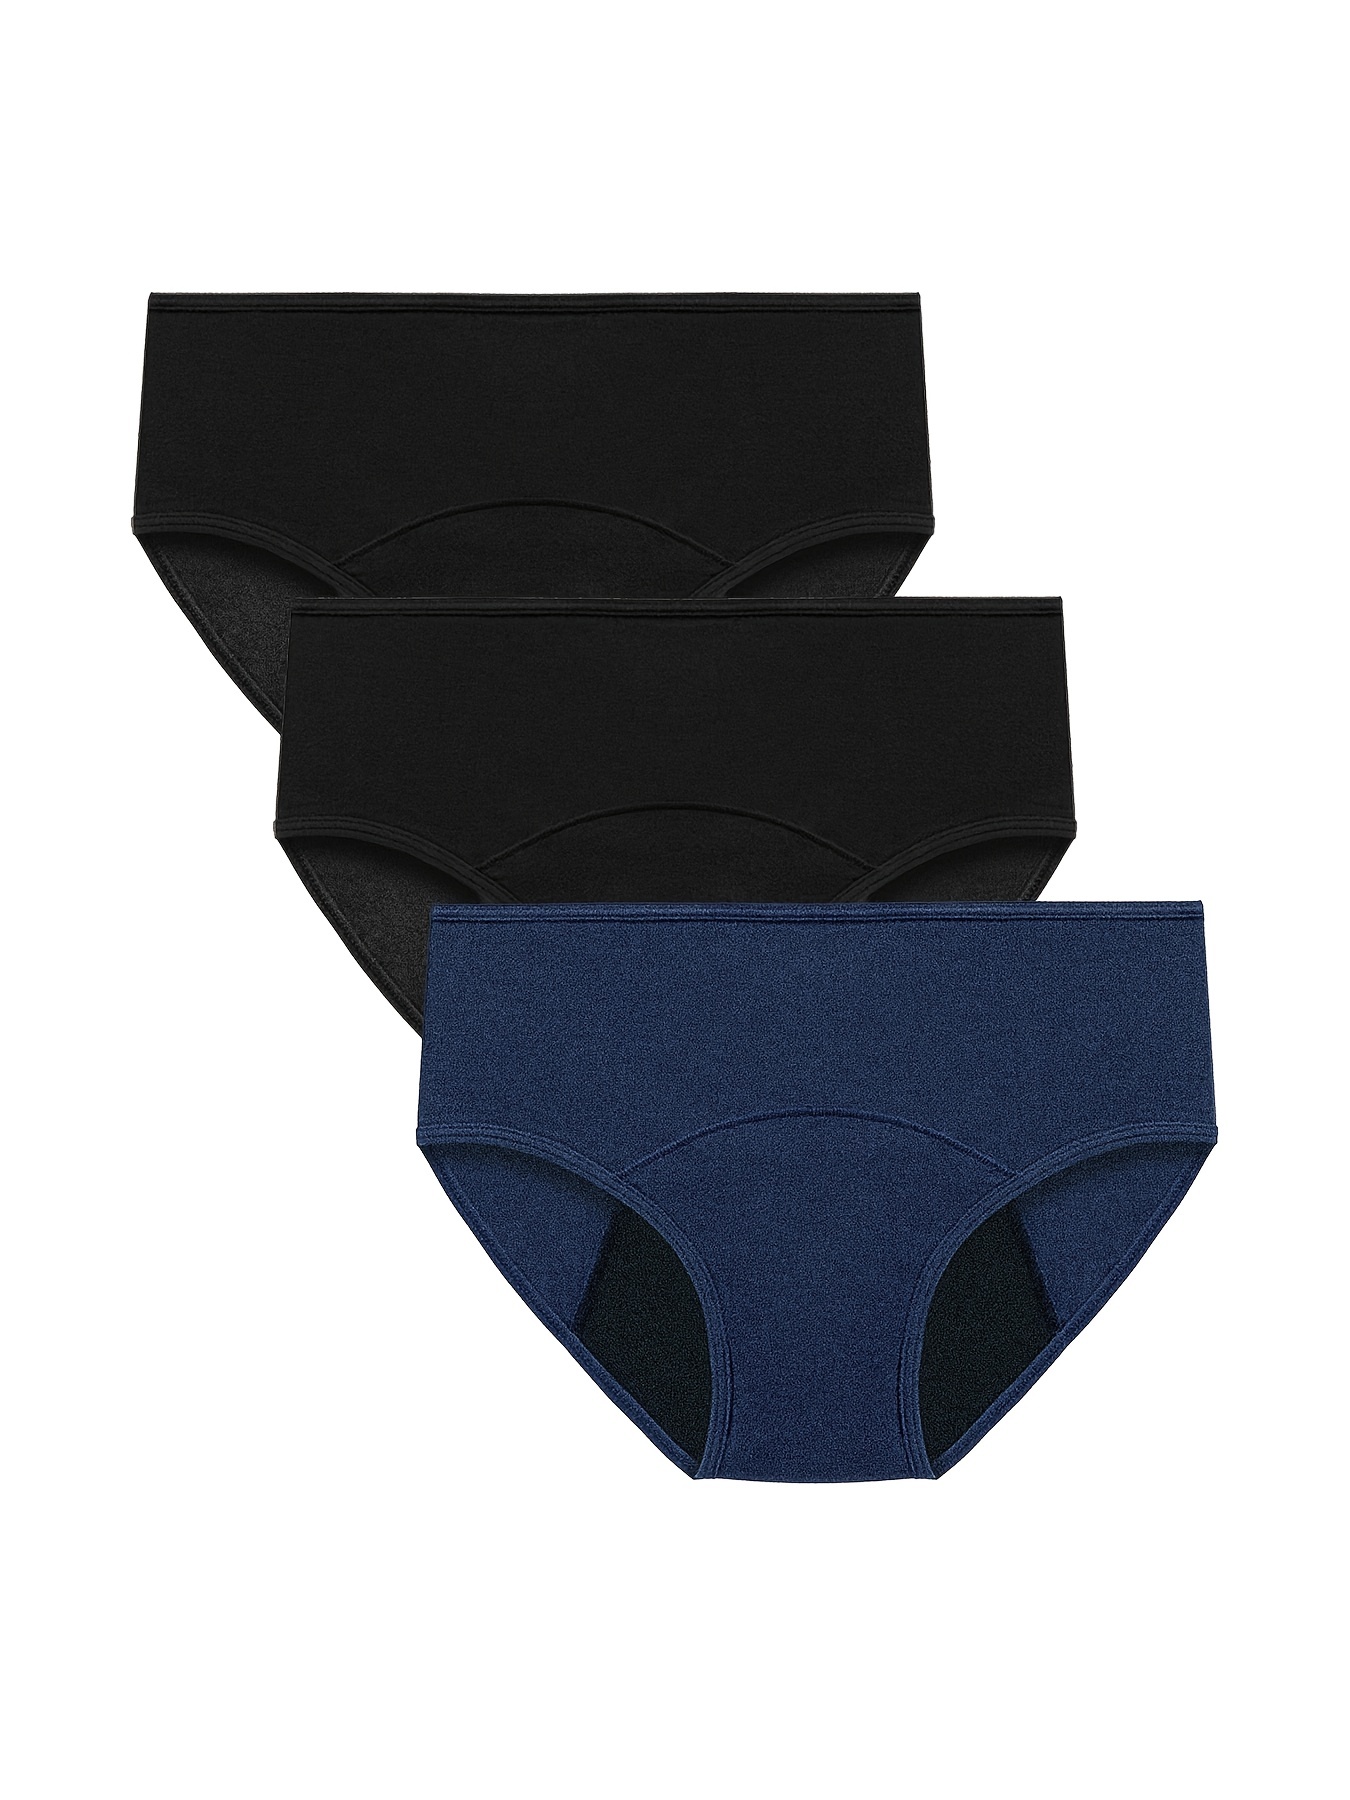 1Pc Women's Pocket Physiological Underwear Women's Leak Proof